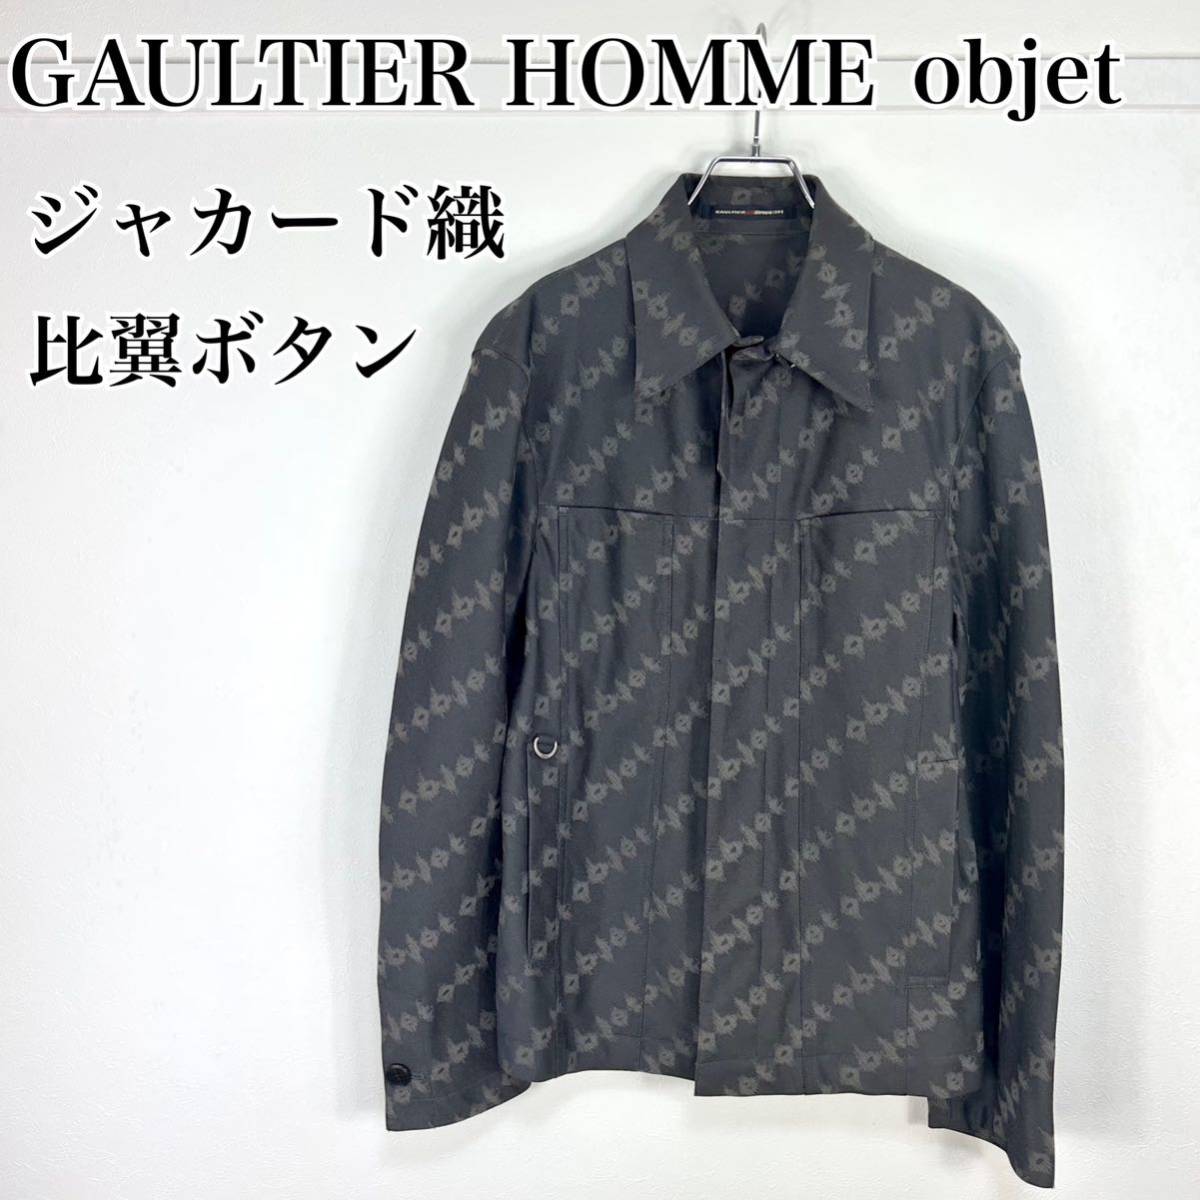 いいスタイル GAULTIER HOMME objet ジャカードトラッカージャケット 男性用